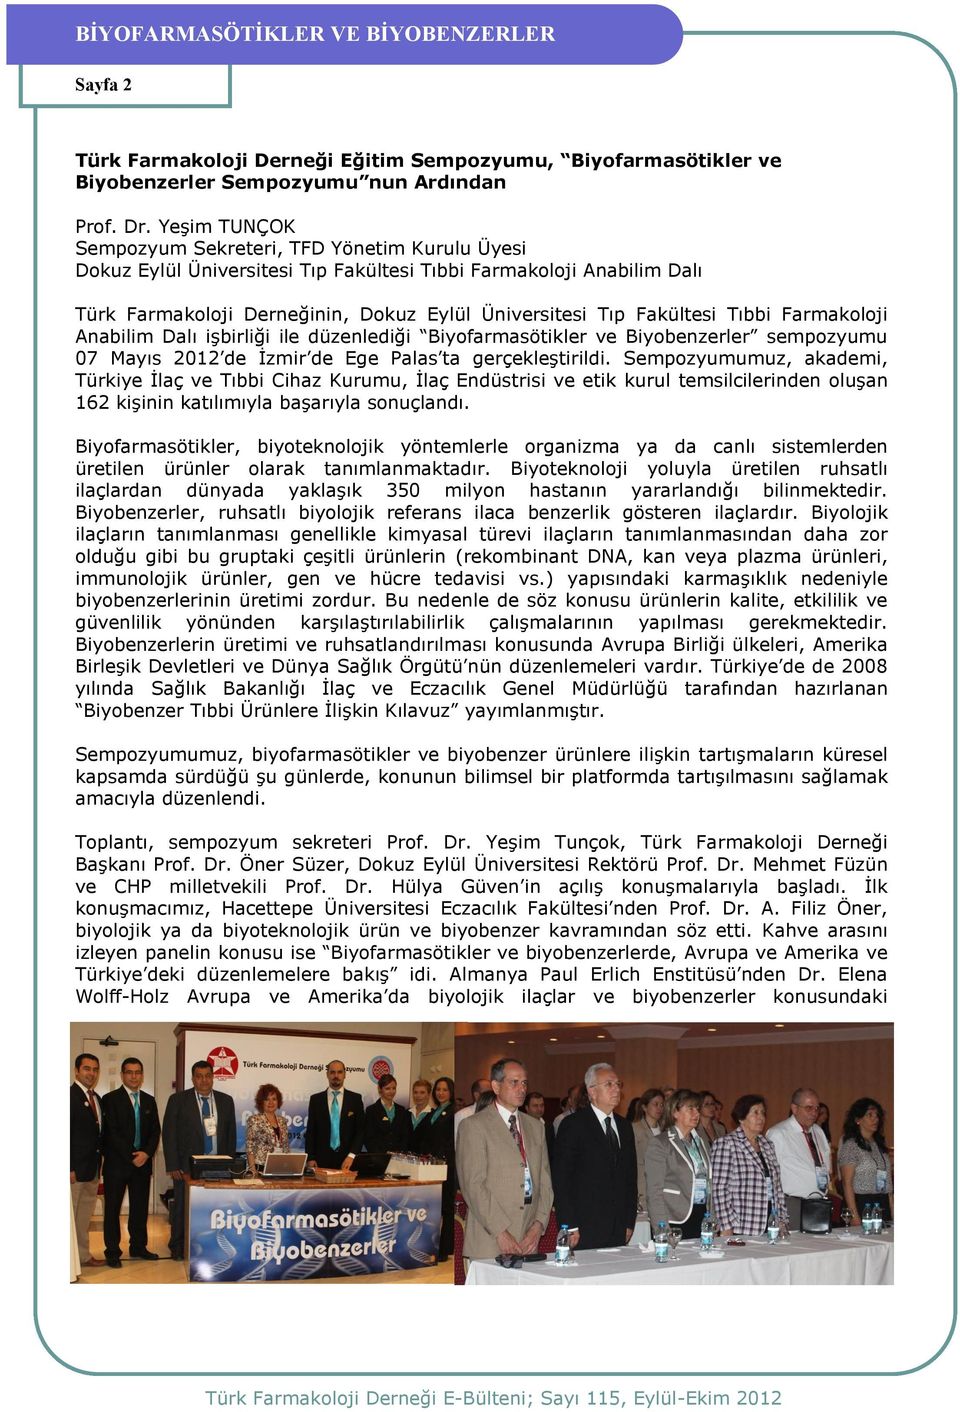 Tıbbi Farmakoloji Anabilim Dalı işbirliği ile düzenlediği Biyofarmasötikler ve Biyobenzerler sempozyumu 07 Mayıs 2012 de İzmir de Ege Palas ta gerçekleştirildi.